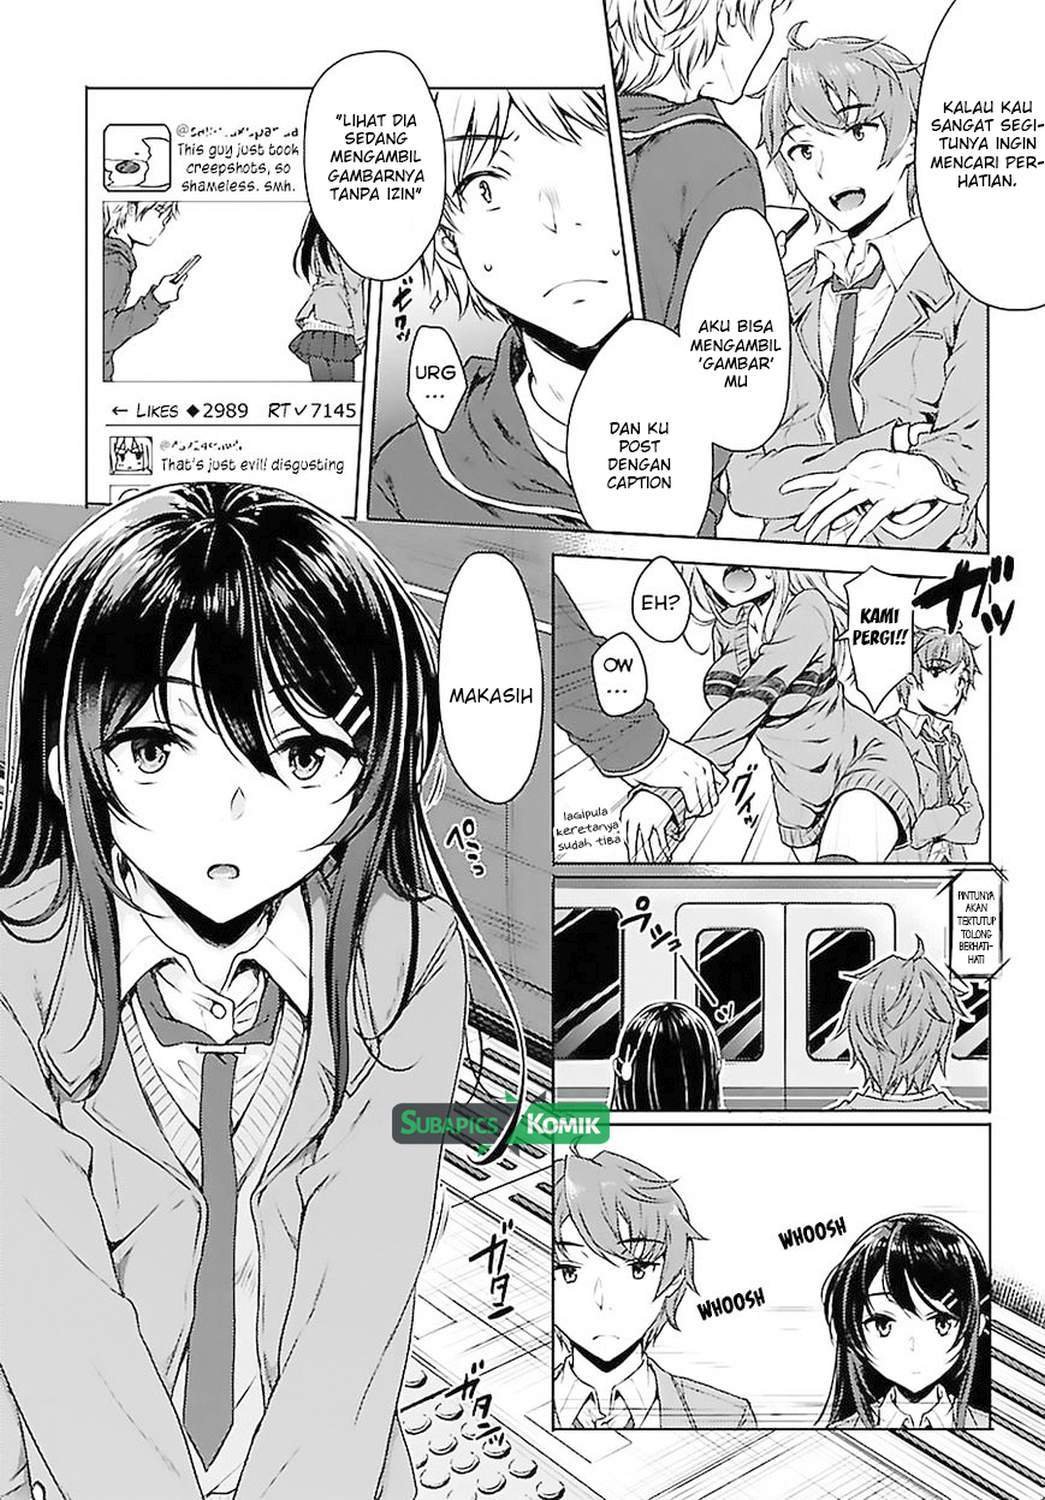 Baca Seishun Buta Yarou wa Bunny Girl-senpai no Yume wo Minai Chapter 2  - GudangKomik